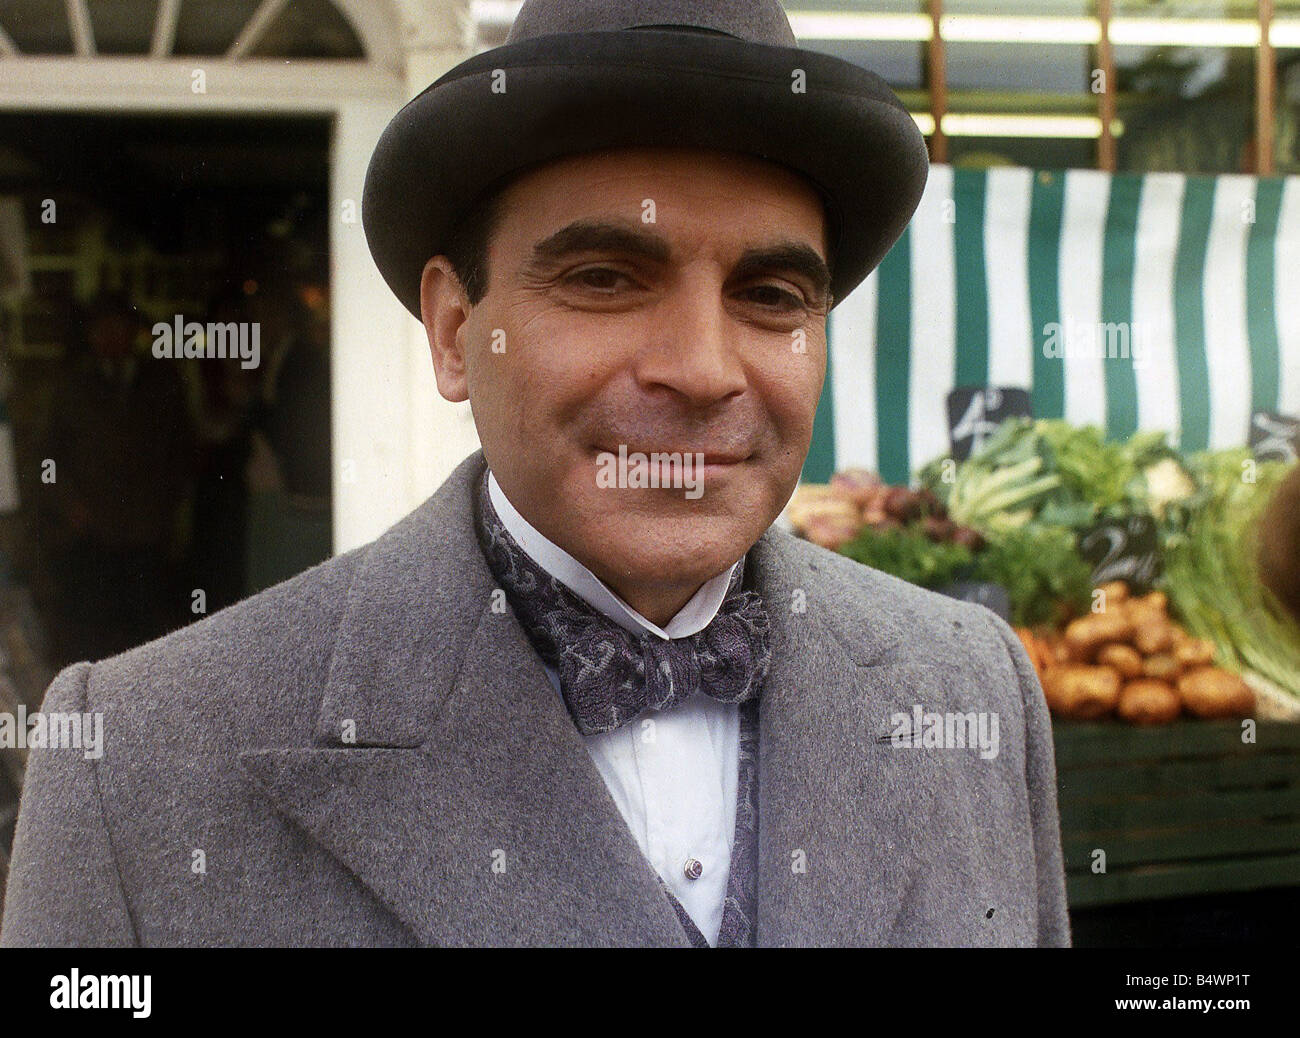 Poirot Banque de photographies et d'images à haute résolution - Page 2 -  Alamy